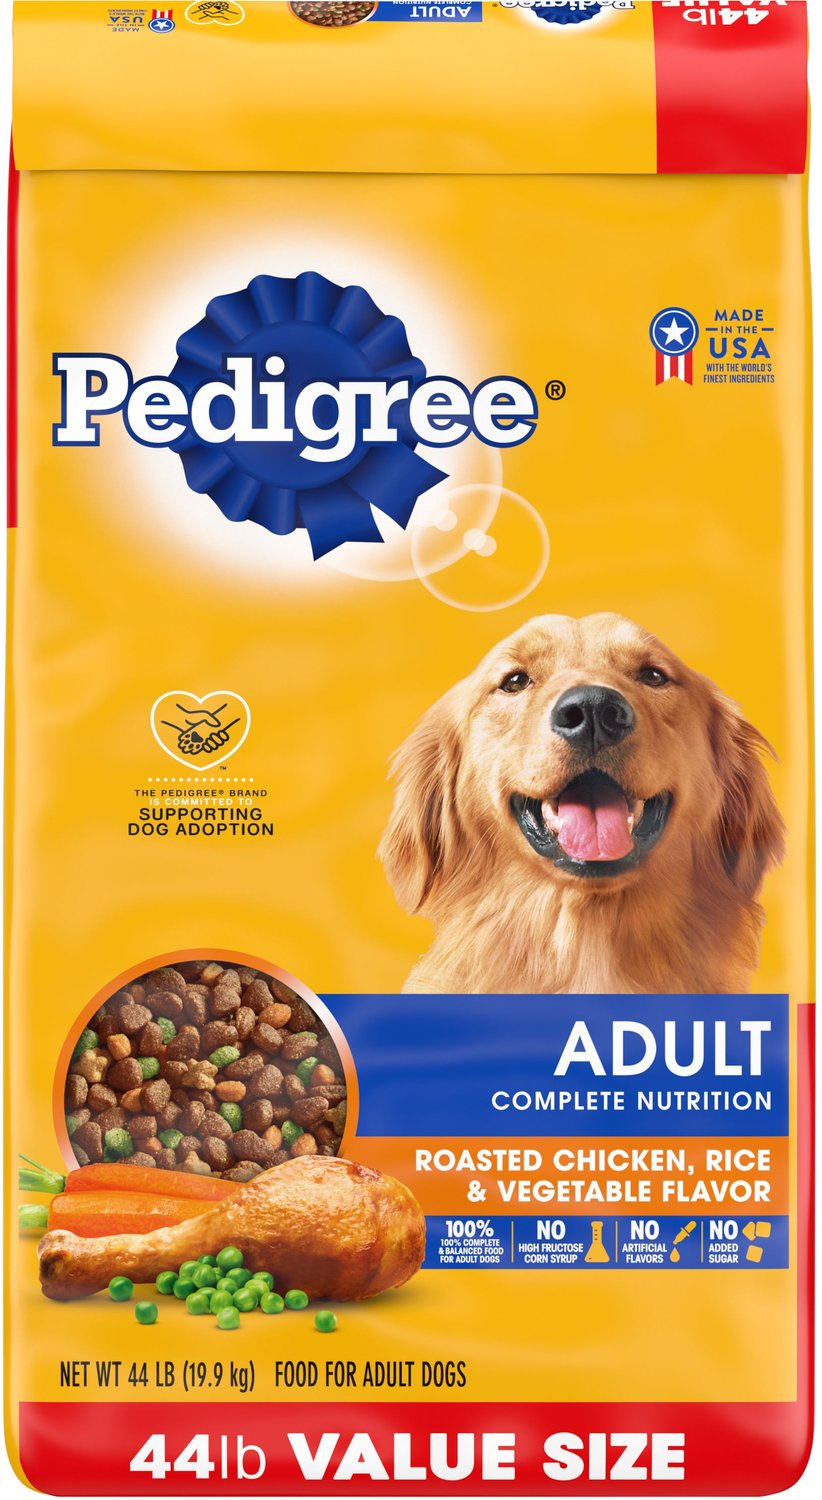 Pedigree Complete Nutrition Roasted Chicken, Rice & Vegetable Flavor Dog Kibble Adult Dry Dog Food